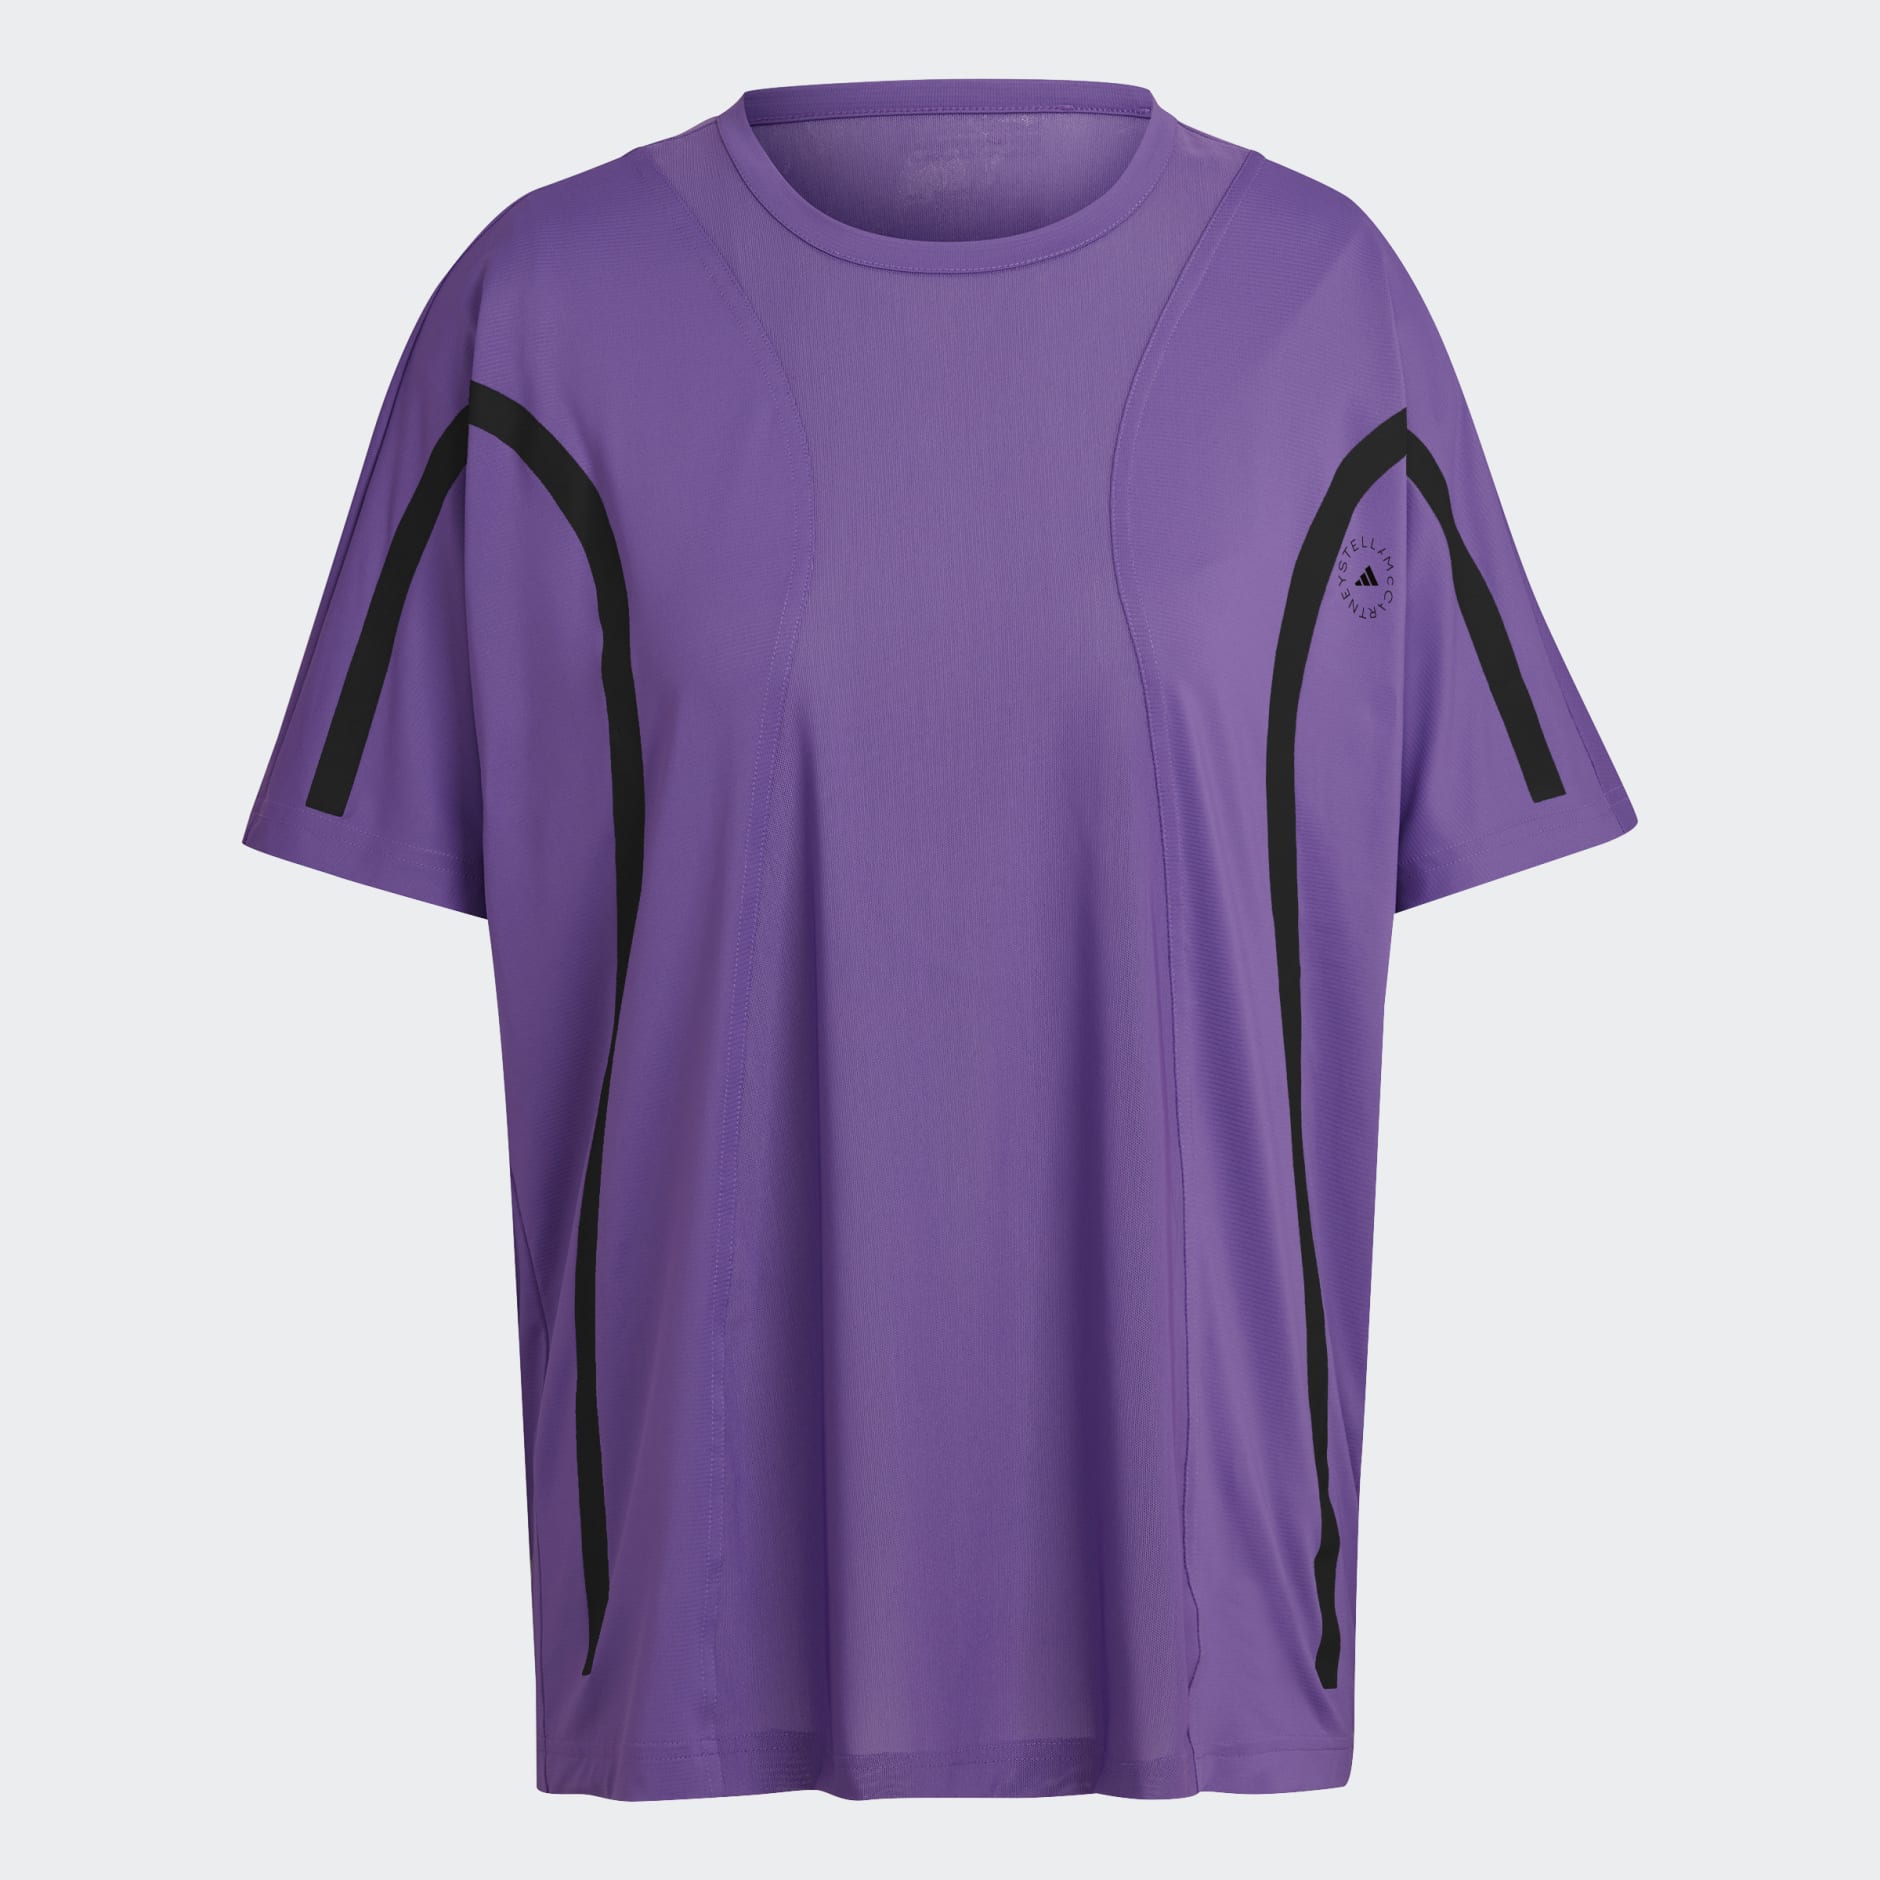 TruePace technical jersey sports top in purple - Adidas By Stella Mc  Cartney